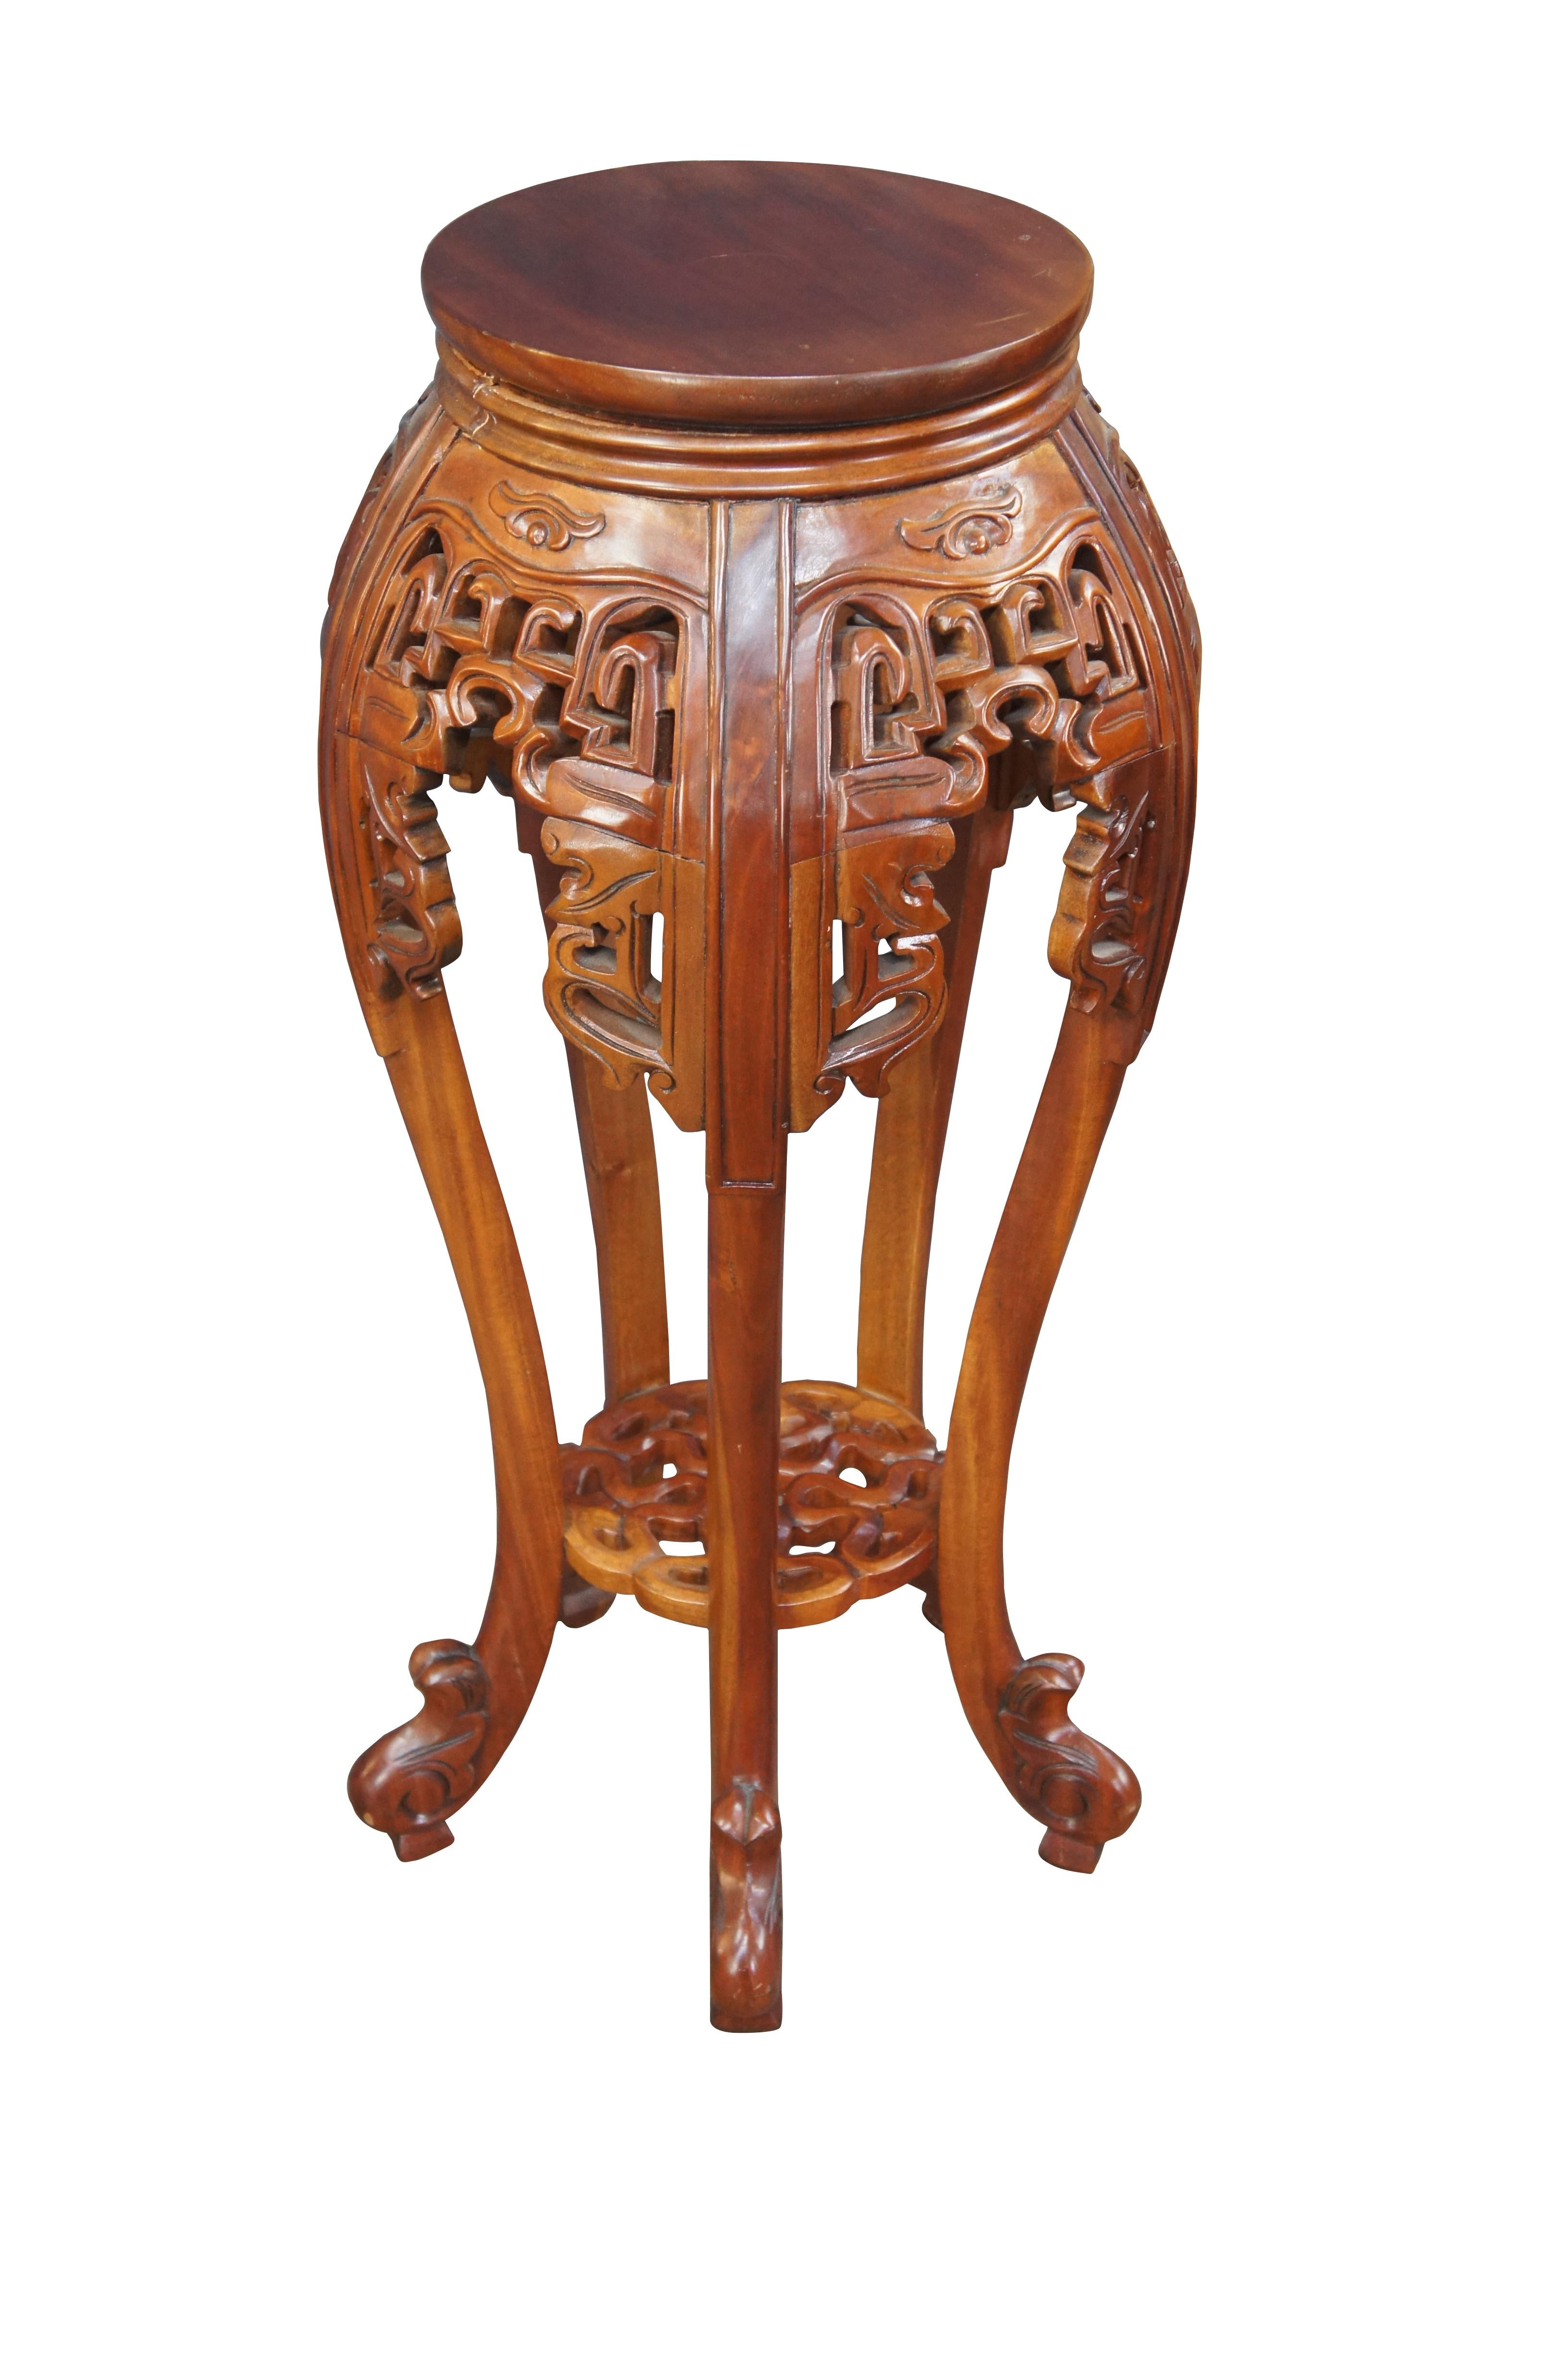 Porte-fougère Chinoiserie en acajou sculpté, vers le dernier quart du 20e siècle. Ce meuble en bois massif est doté de longs pieds profilés, de frettes percées, d'une étagère géométrique inférieure et de pieds à volutes.

Dimensions :
15,5